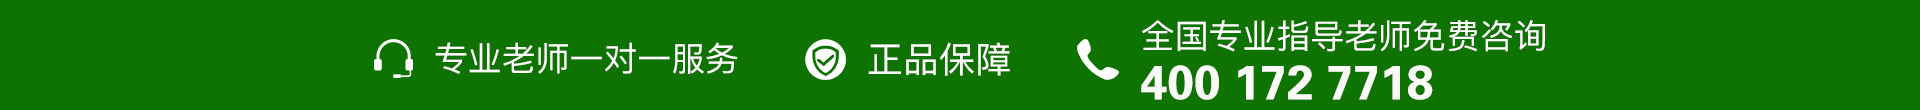 绿色电话-banner图下方-PC - 副本 (4).jpg